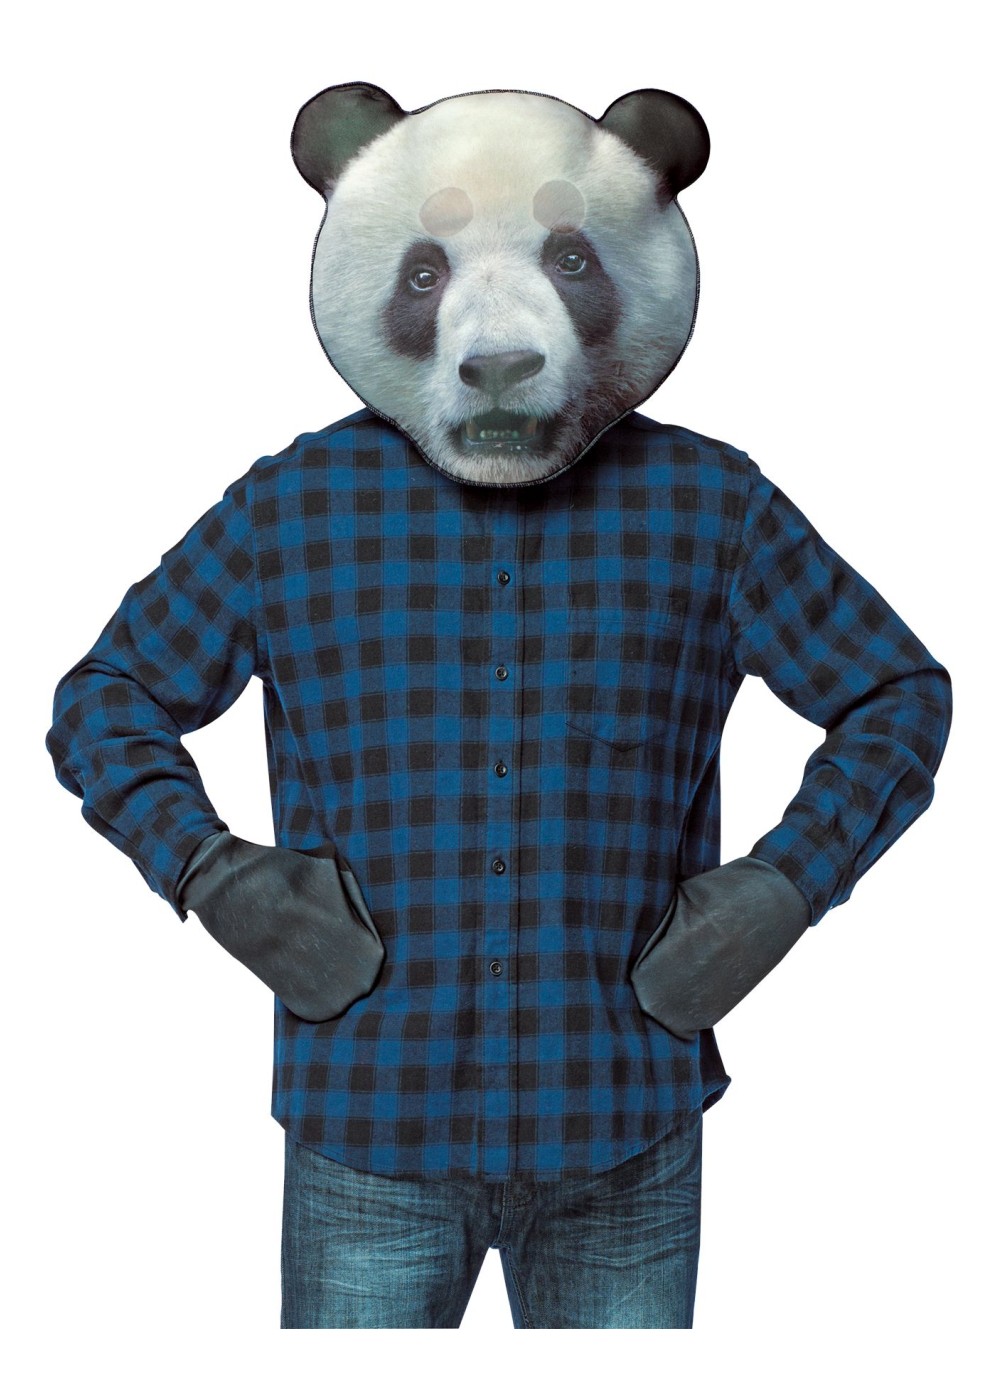 Panda Mask Costume Kit